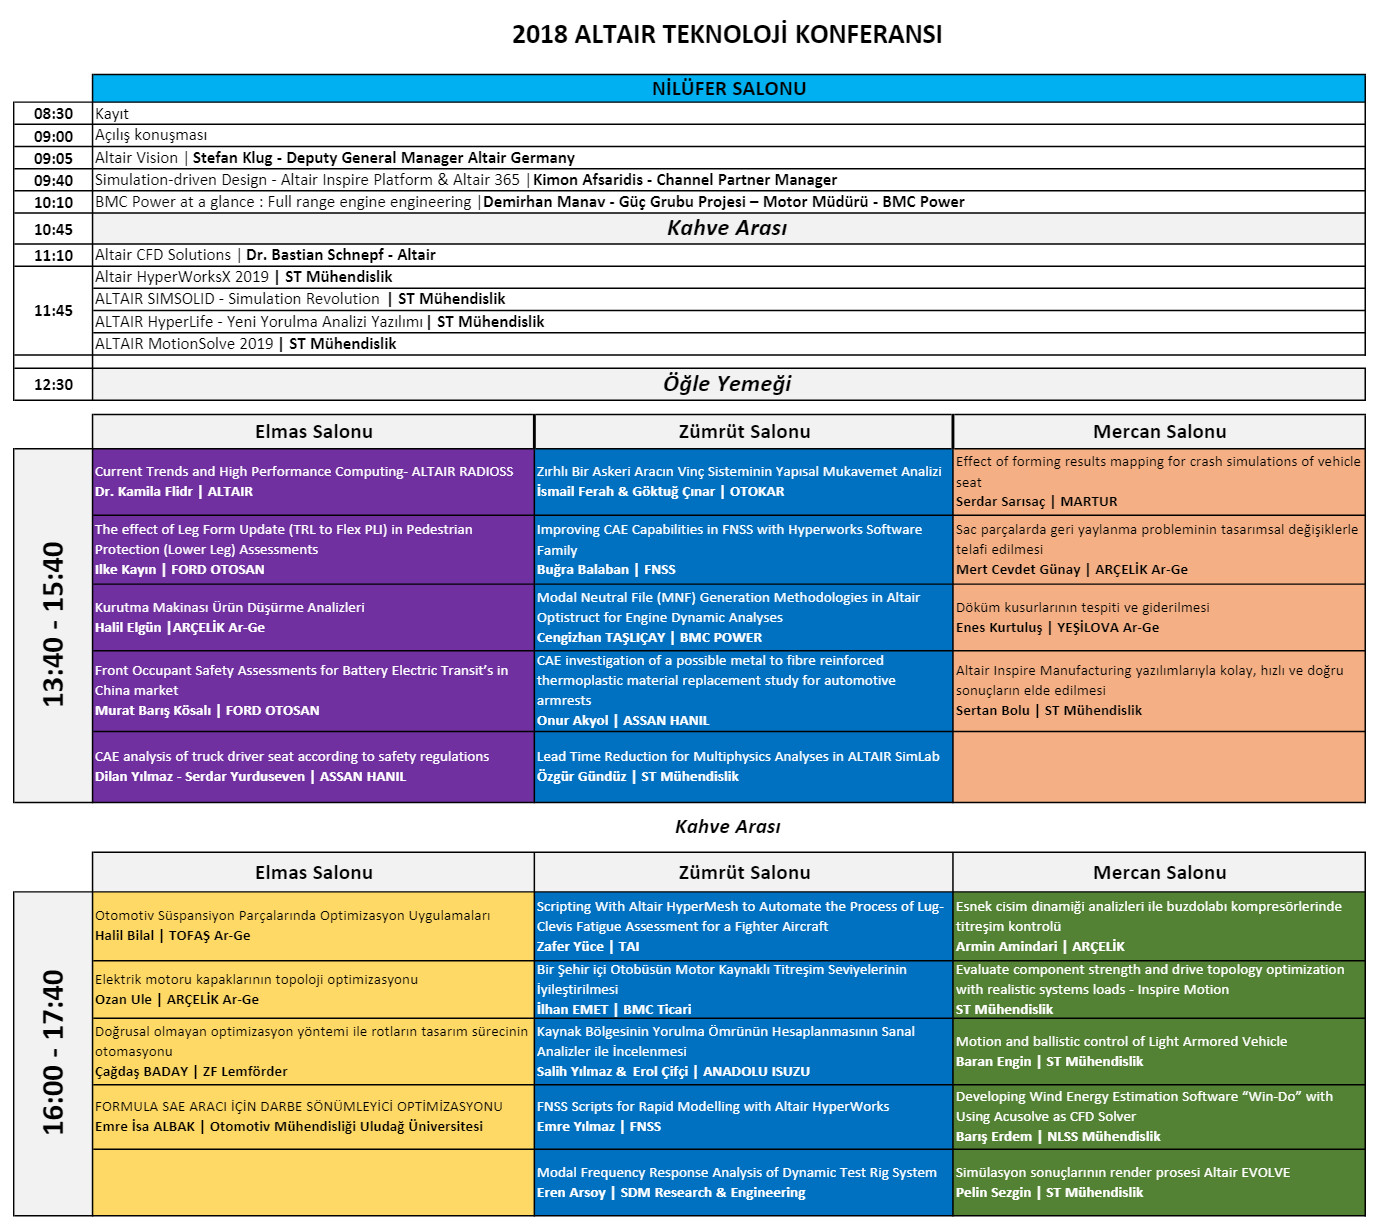 altair teknoloji konferansı 2018